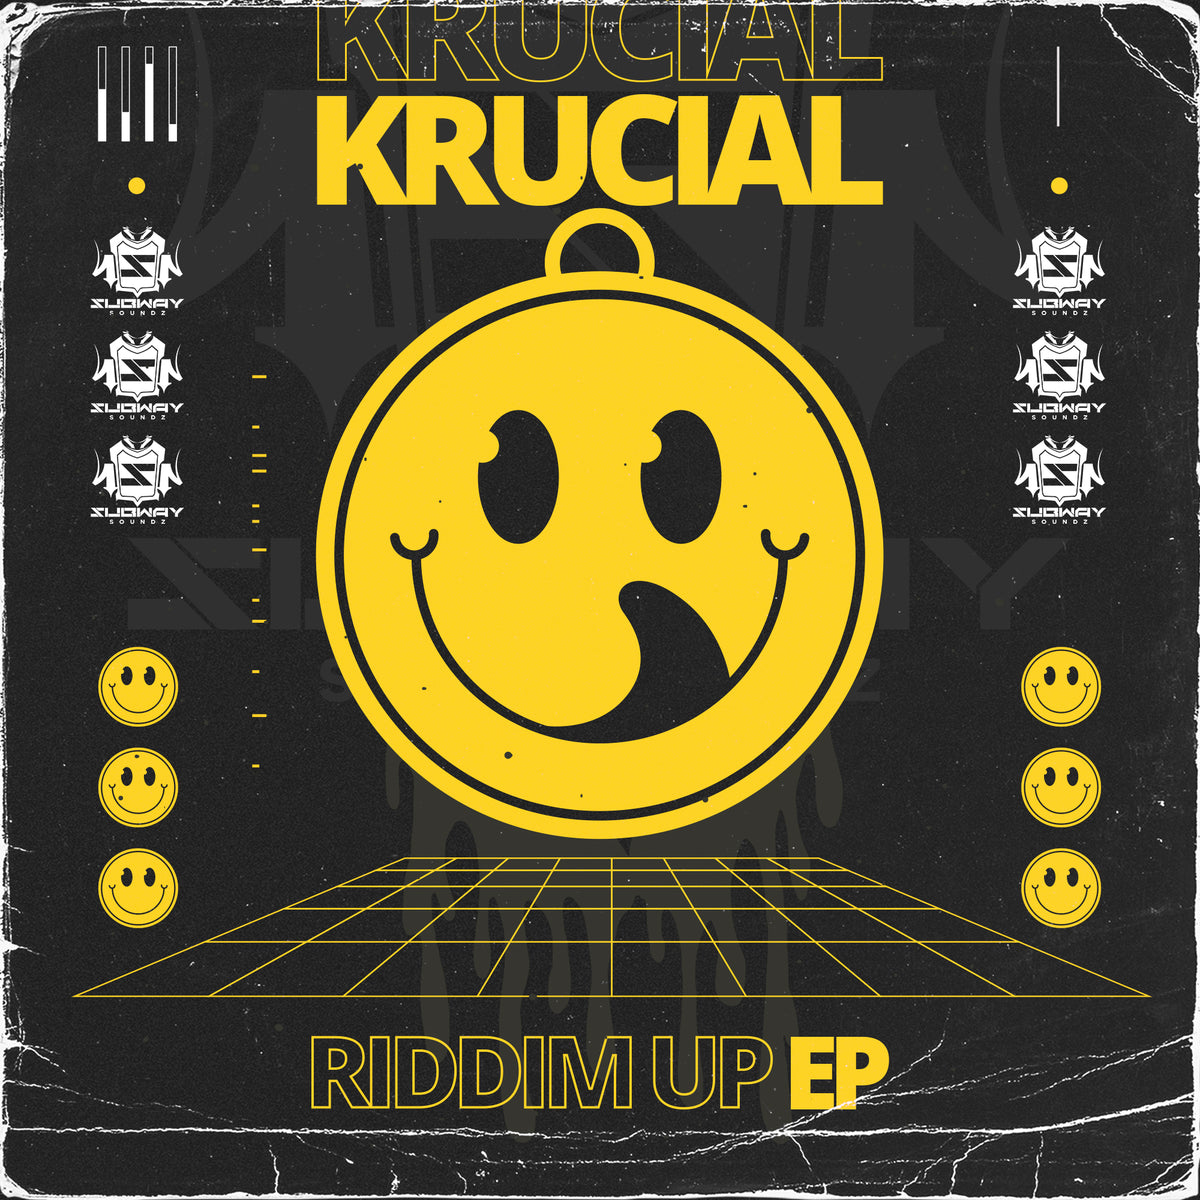 SSLD 160 - Krucial 'Riddim Up EP'